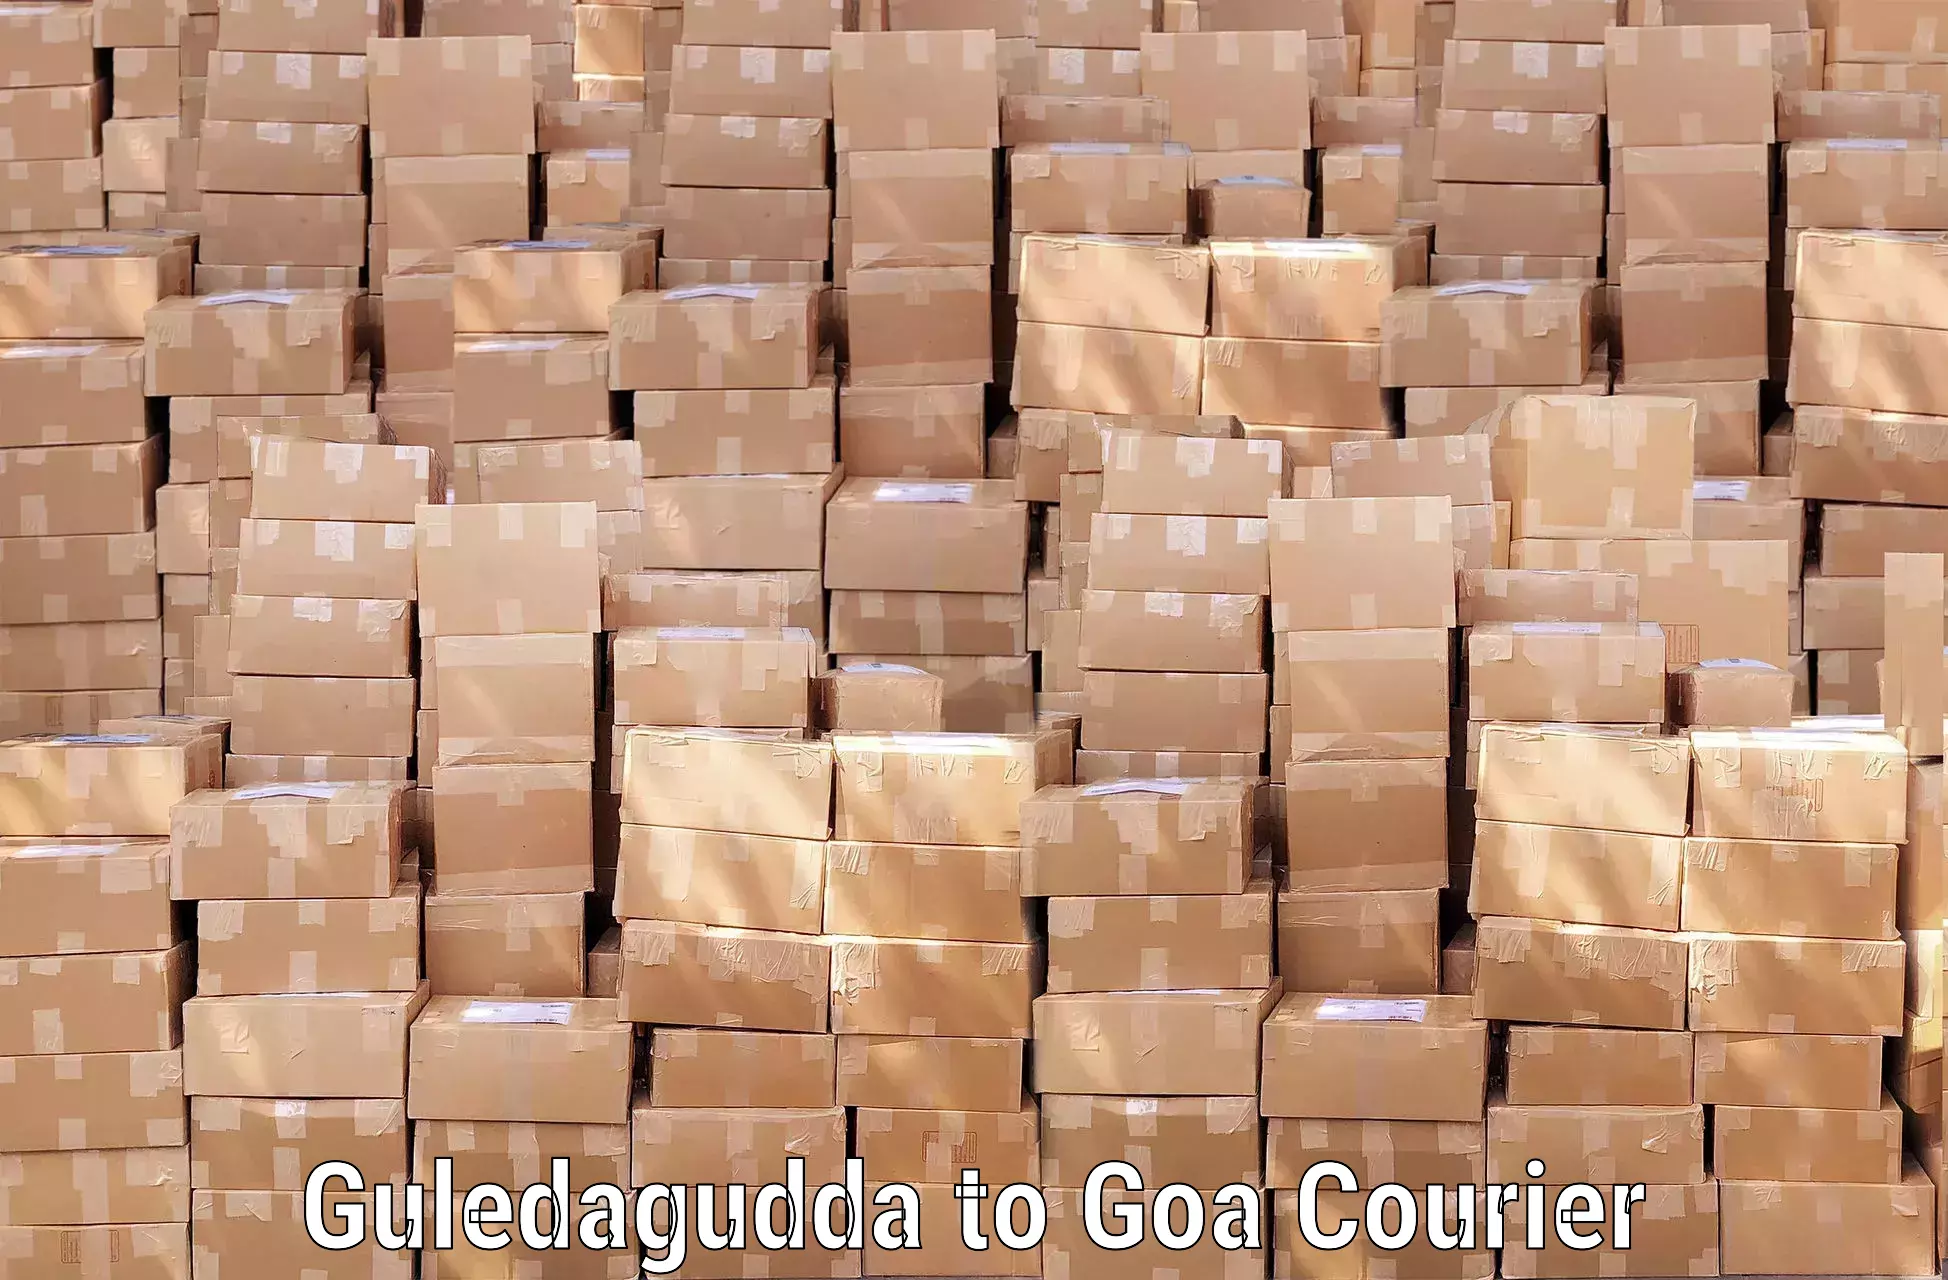 Luggage forwarding service Guledagudda to Goa